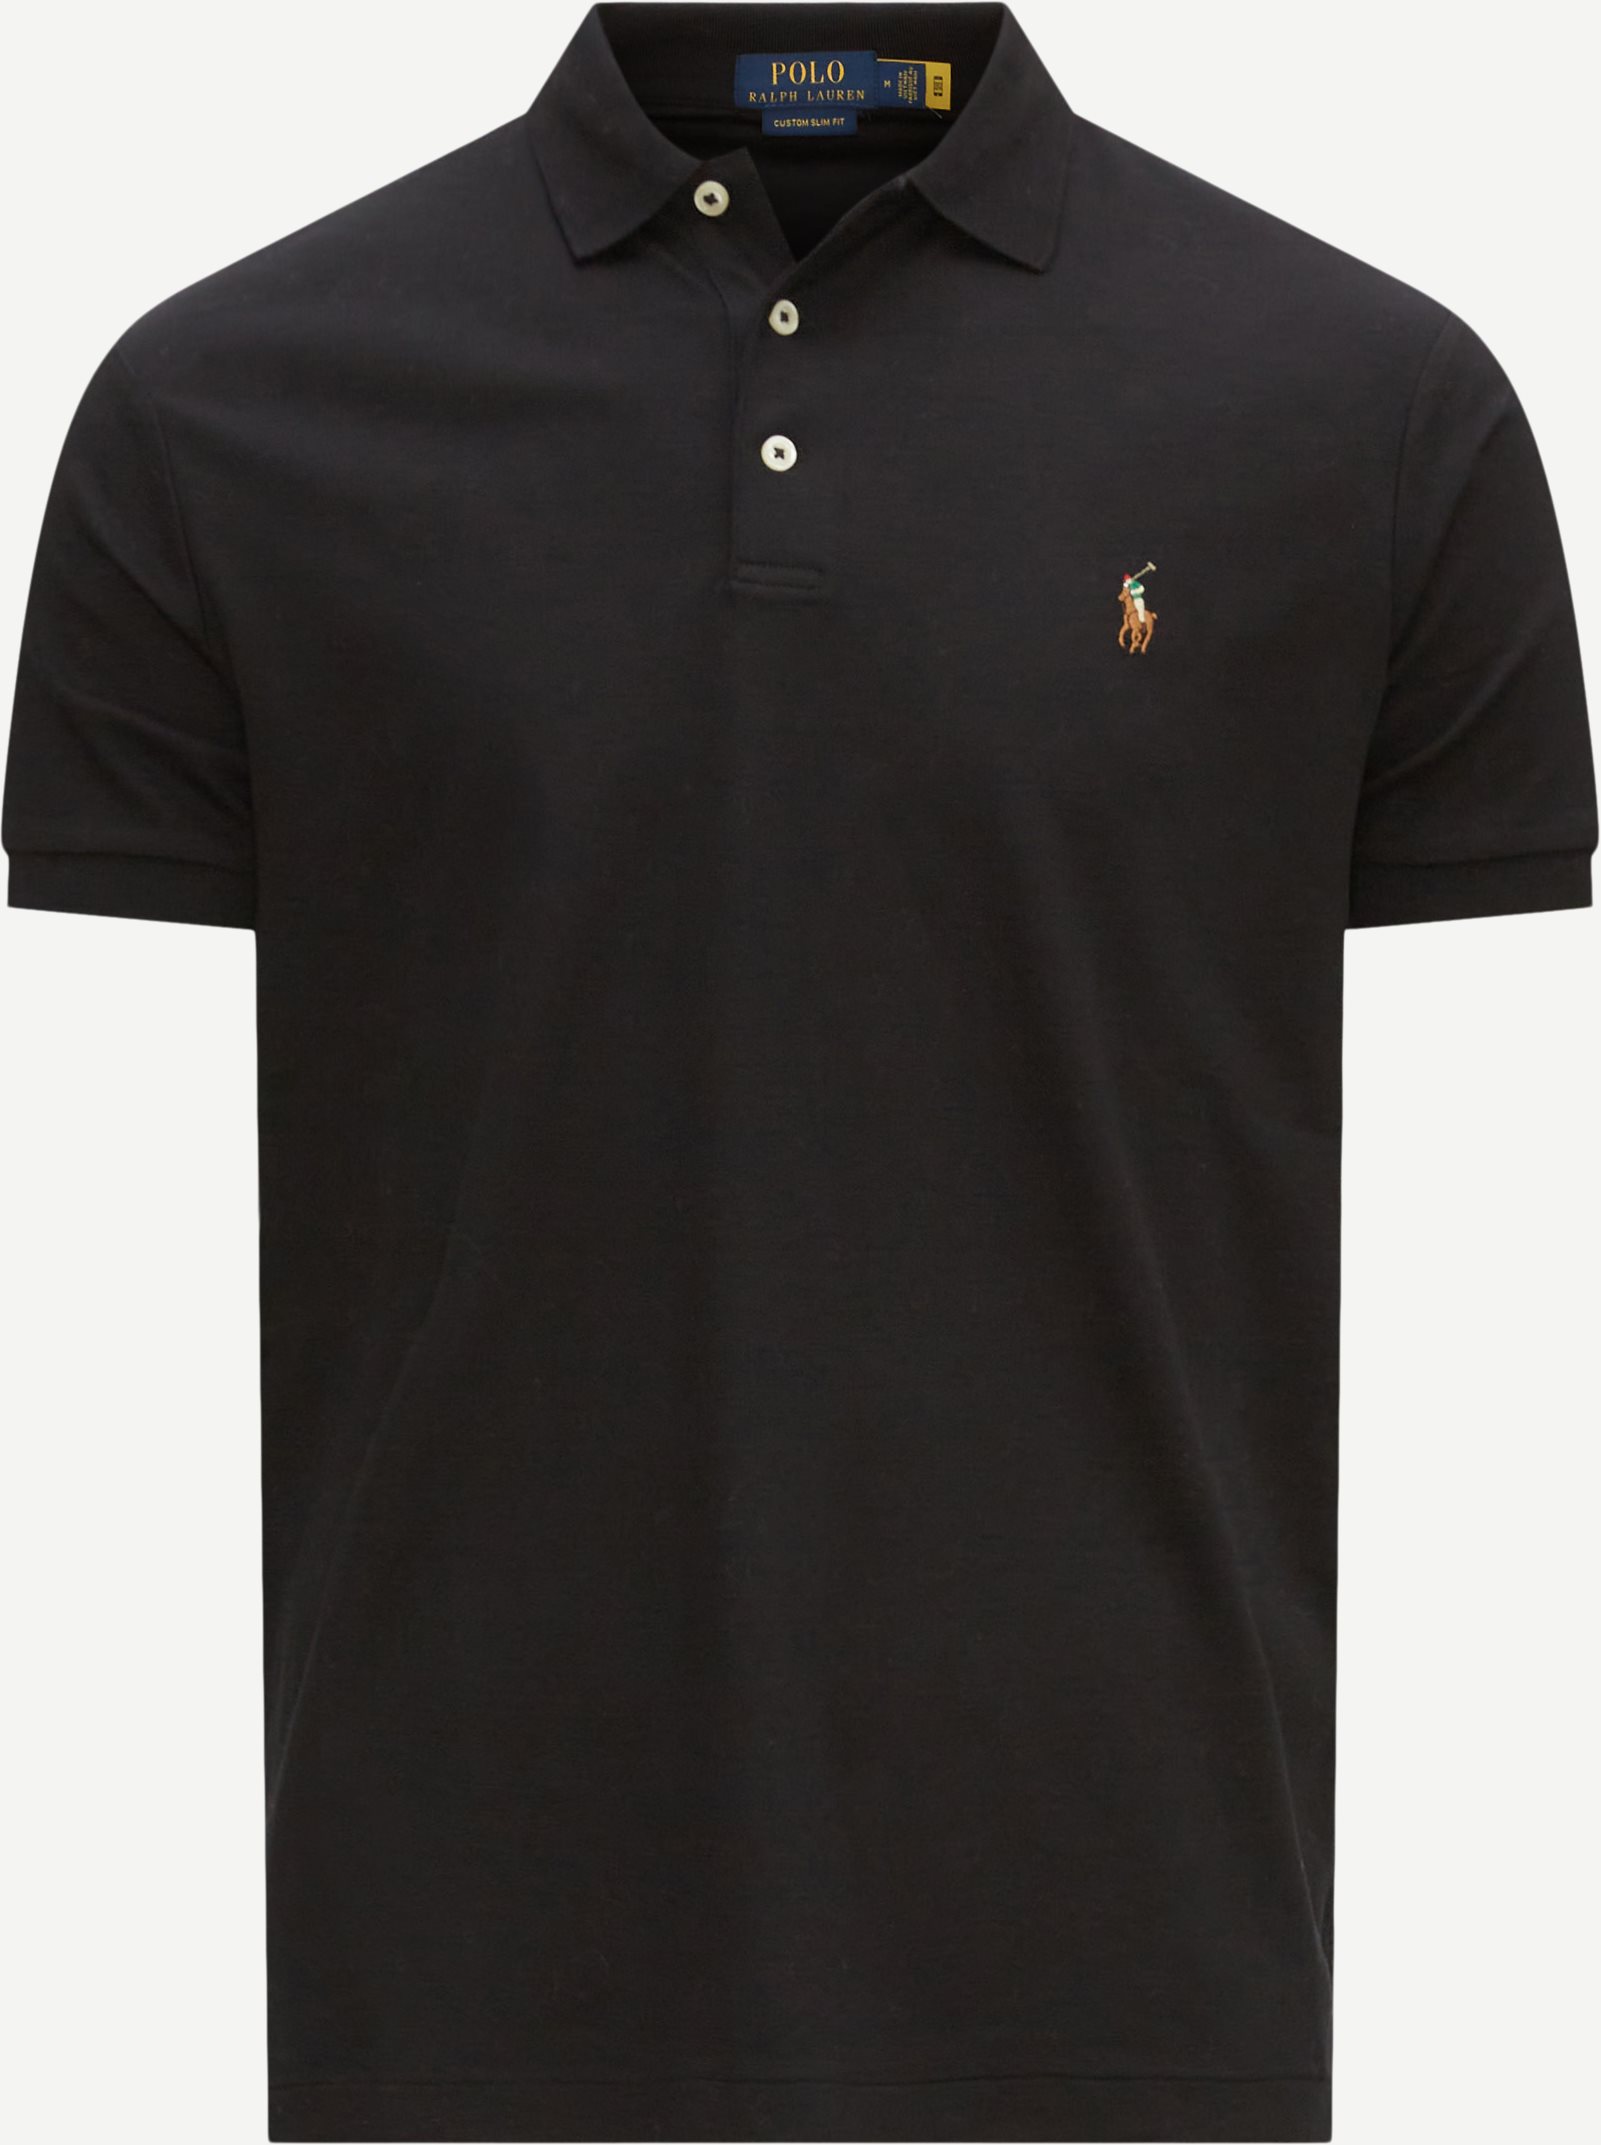 Polo Ralph Lauren T-shirts 710713130 SS23 Black